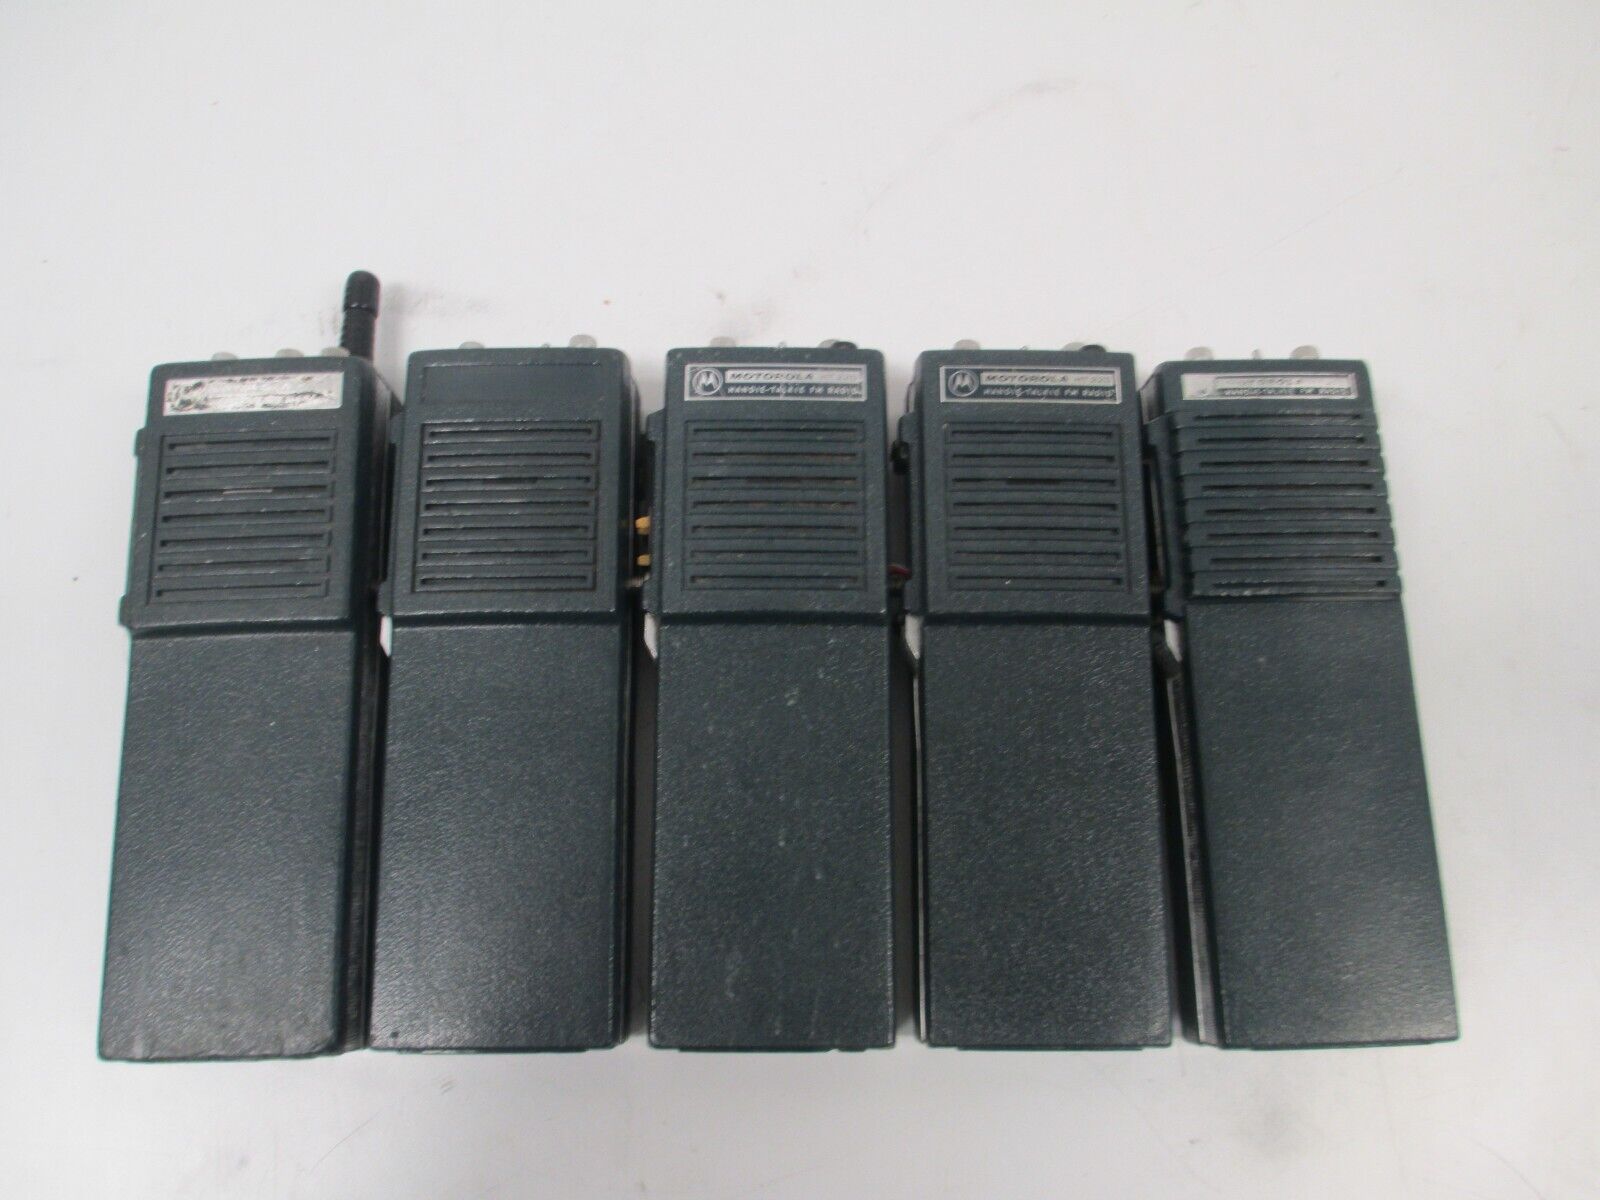 Lot of 5 Vintage Motorola HT220 Handie-Talkie FM 2-Way Radios